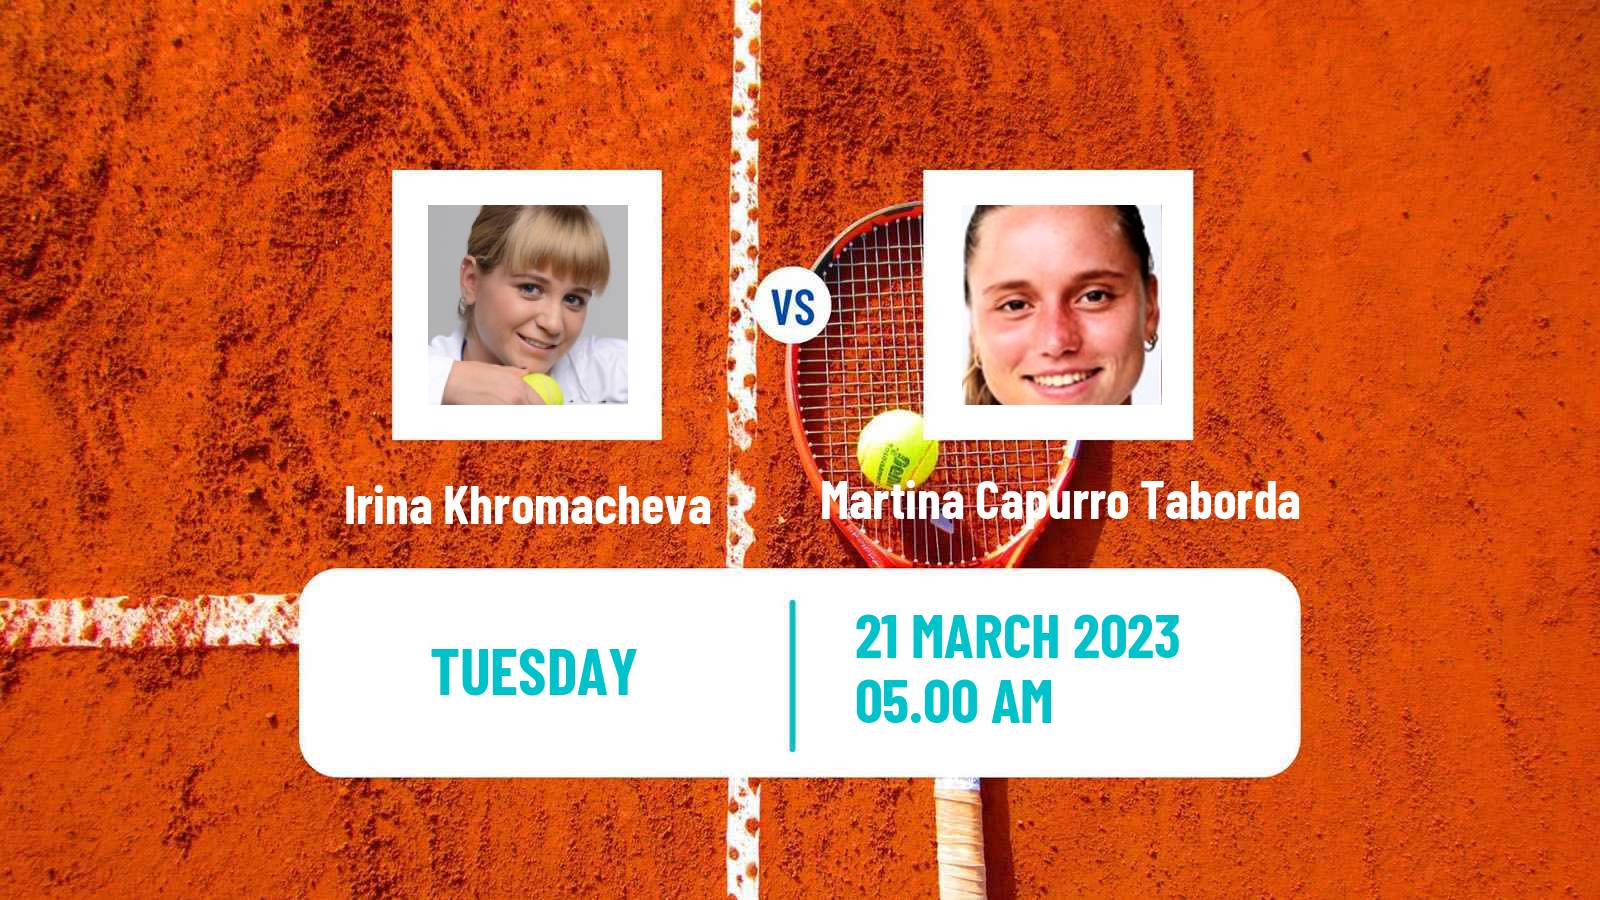 Tennis ITF Tournaments Irina Khromacheva - Martina Capurro Taborda